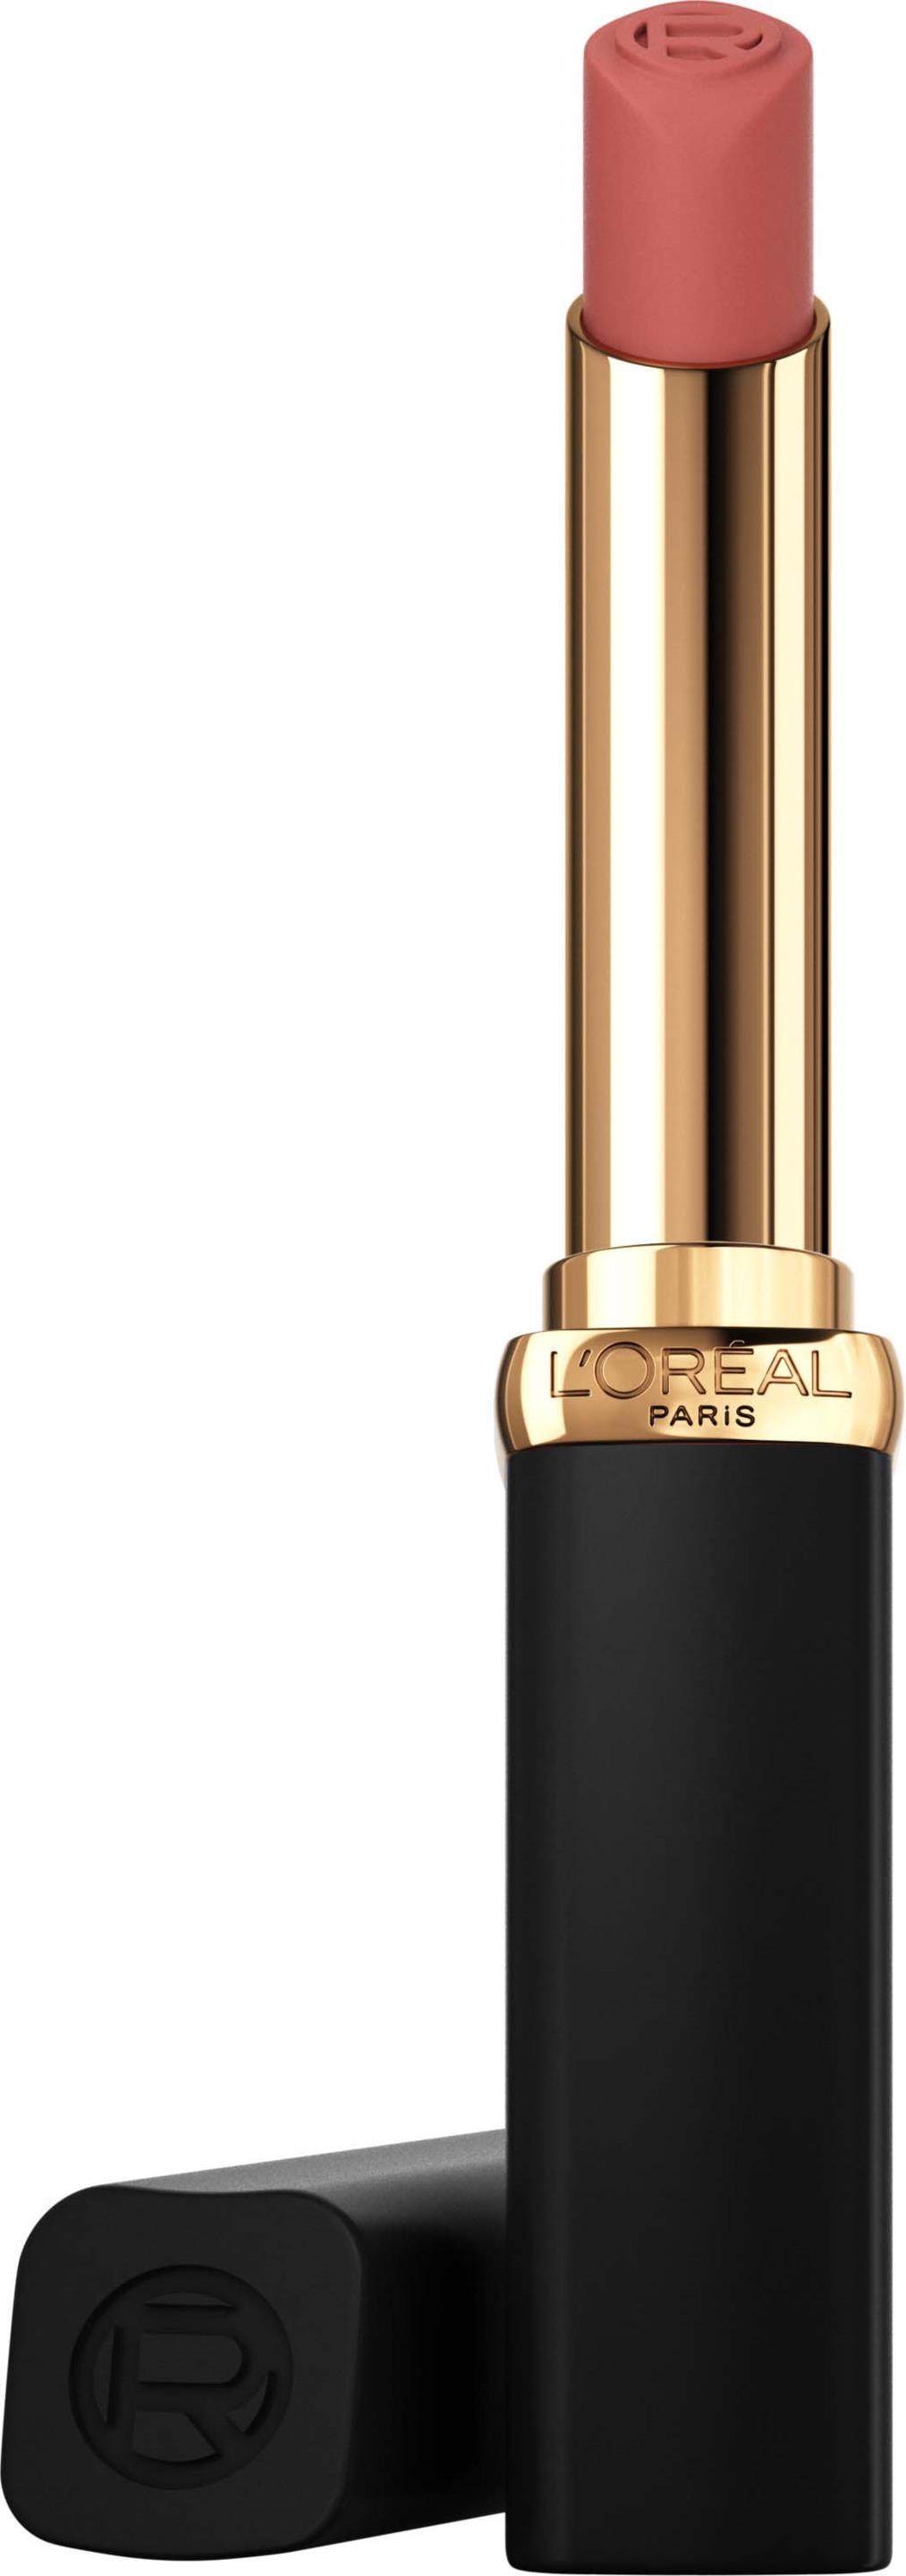 Loreal Paris Color Riche Intense Volume Matte Lipstick 600 Nude Audacious